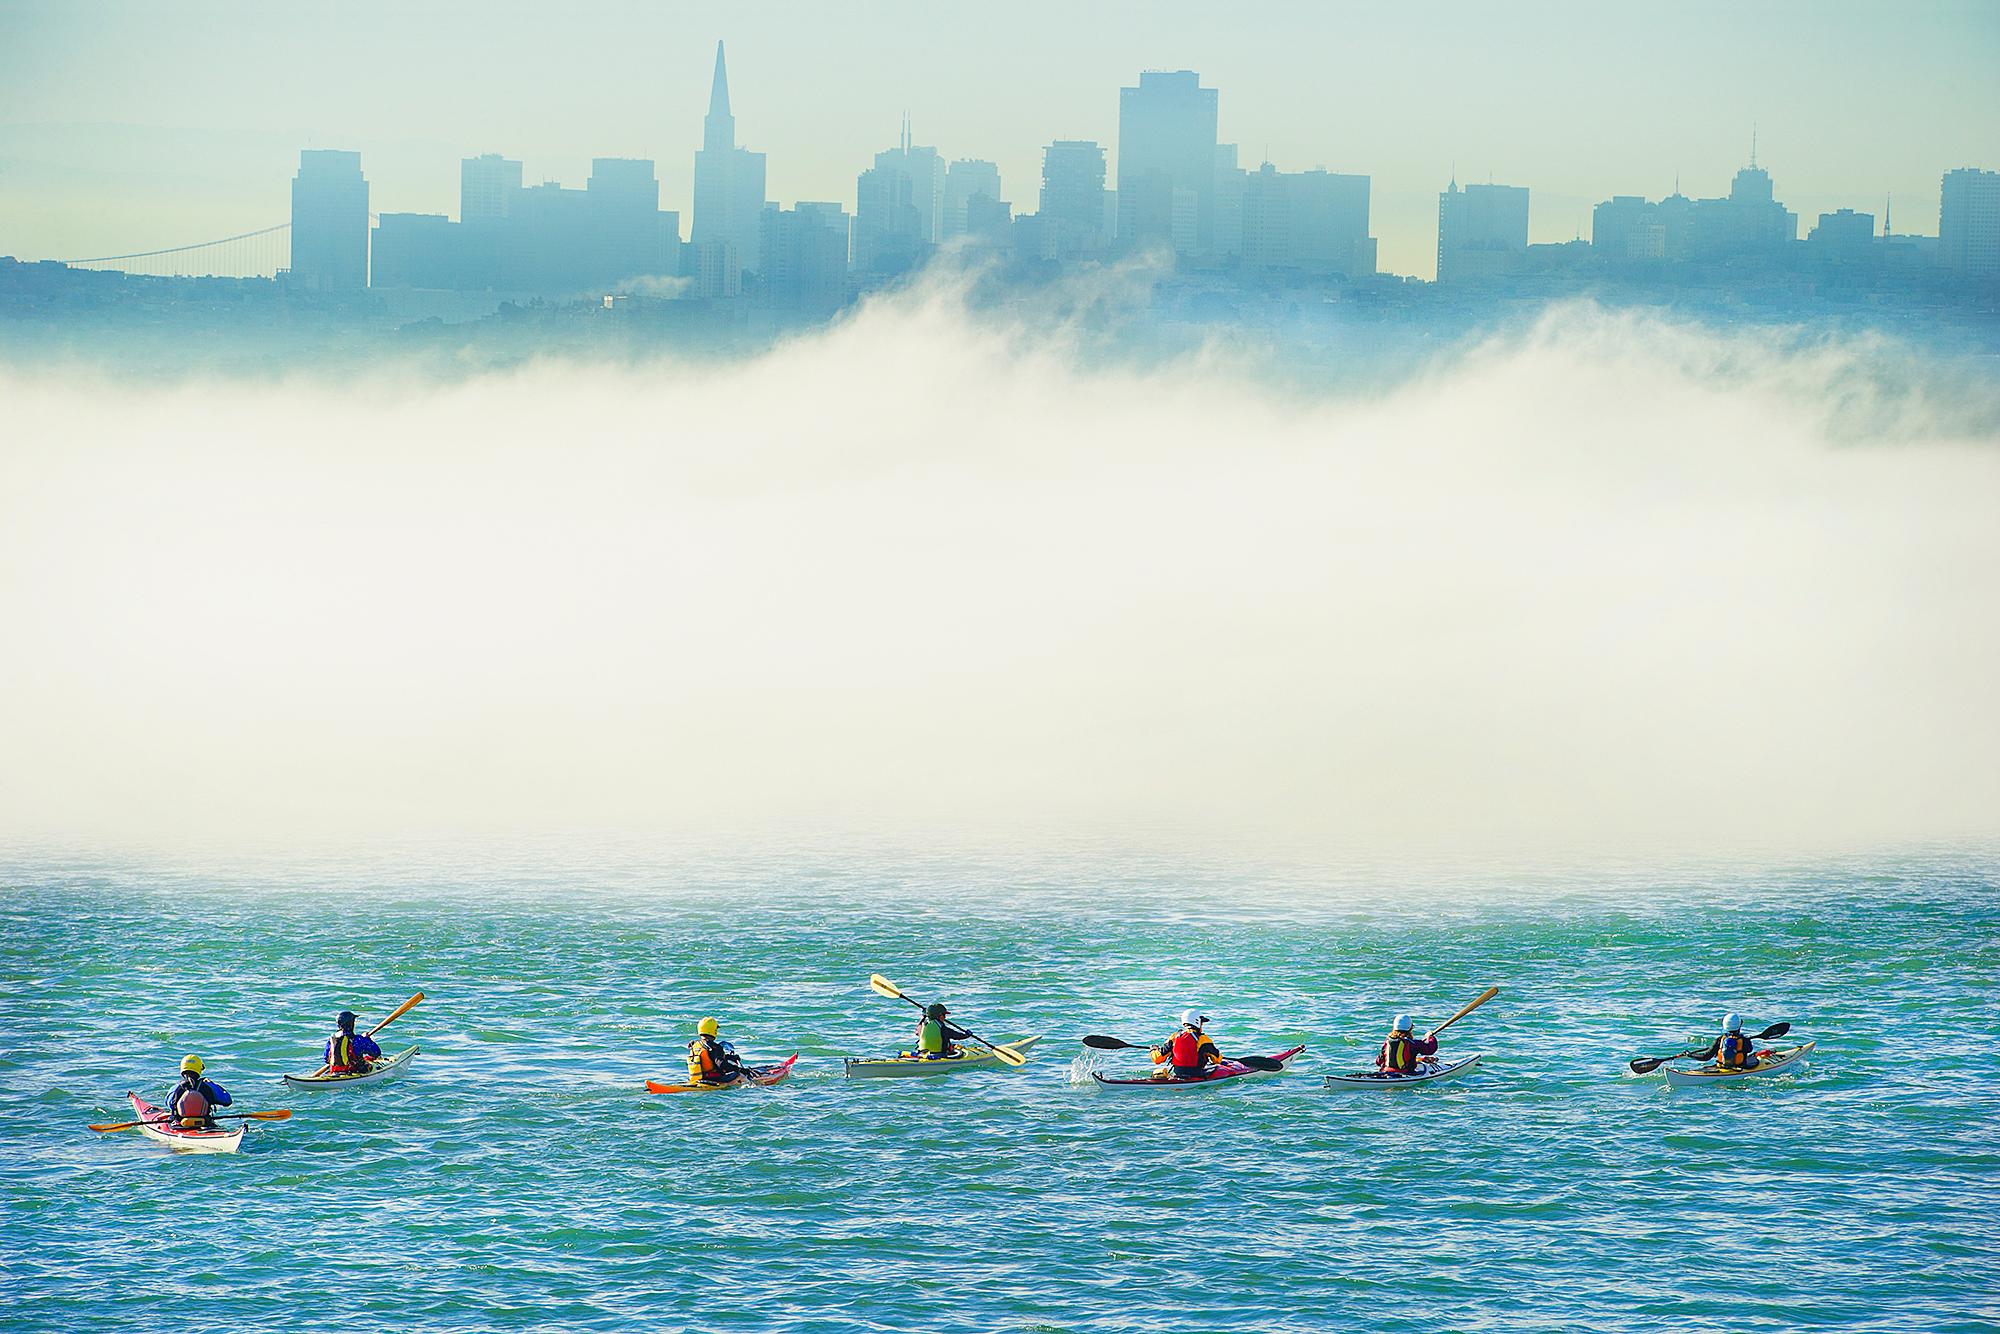 Fête surréaliste en kayak dans la baie de San Francisco, brumeuse et métaphysique, à l'horizon assombri